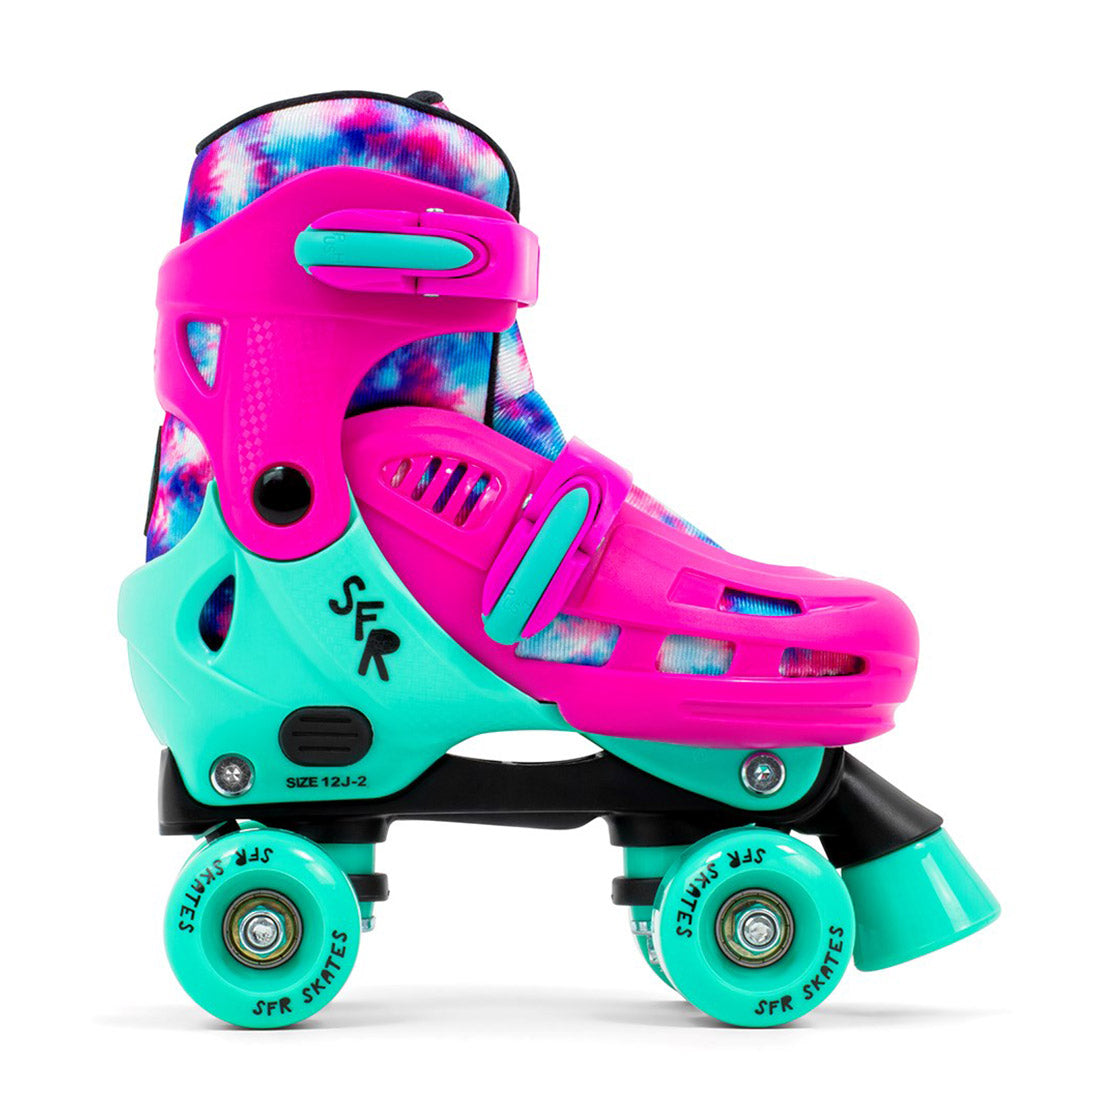 SFR Hurricane IV Skates - Tie Dye Roller Skates